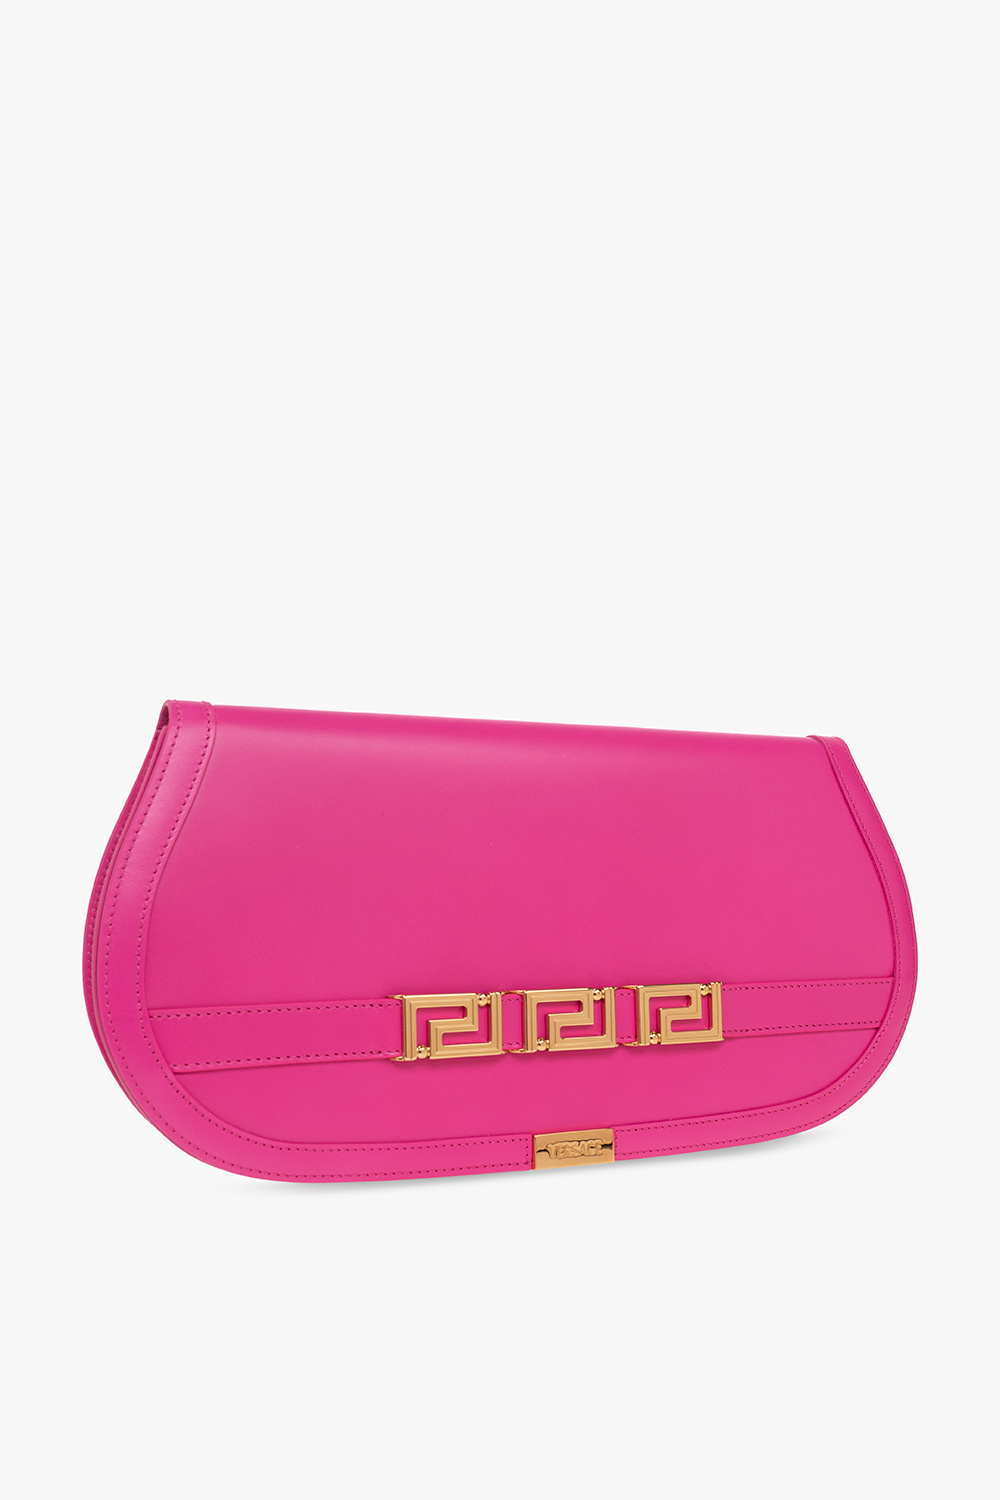 Versace ‘Greca Goddess’ handbag